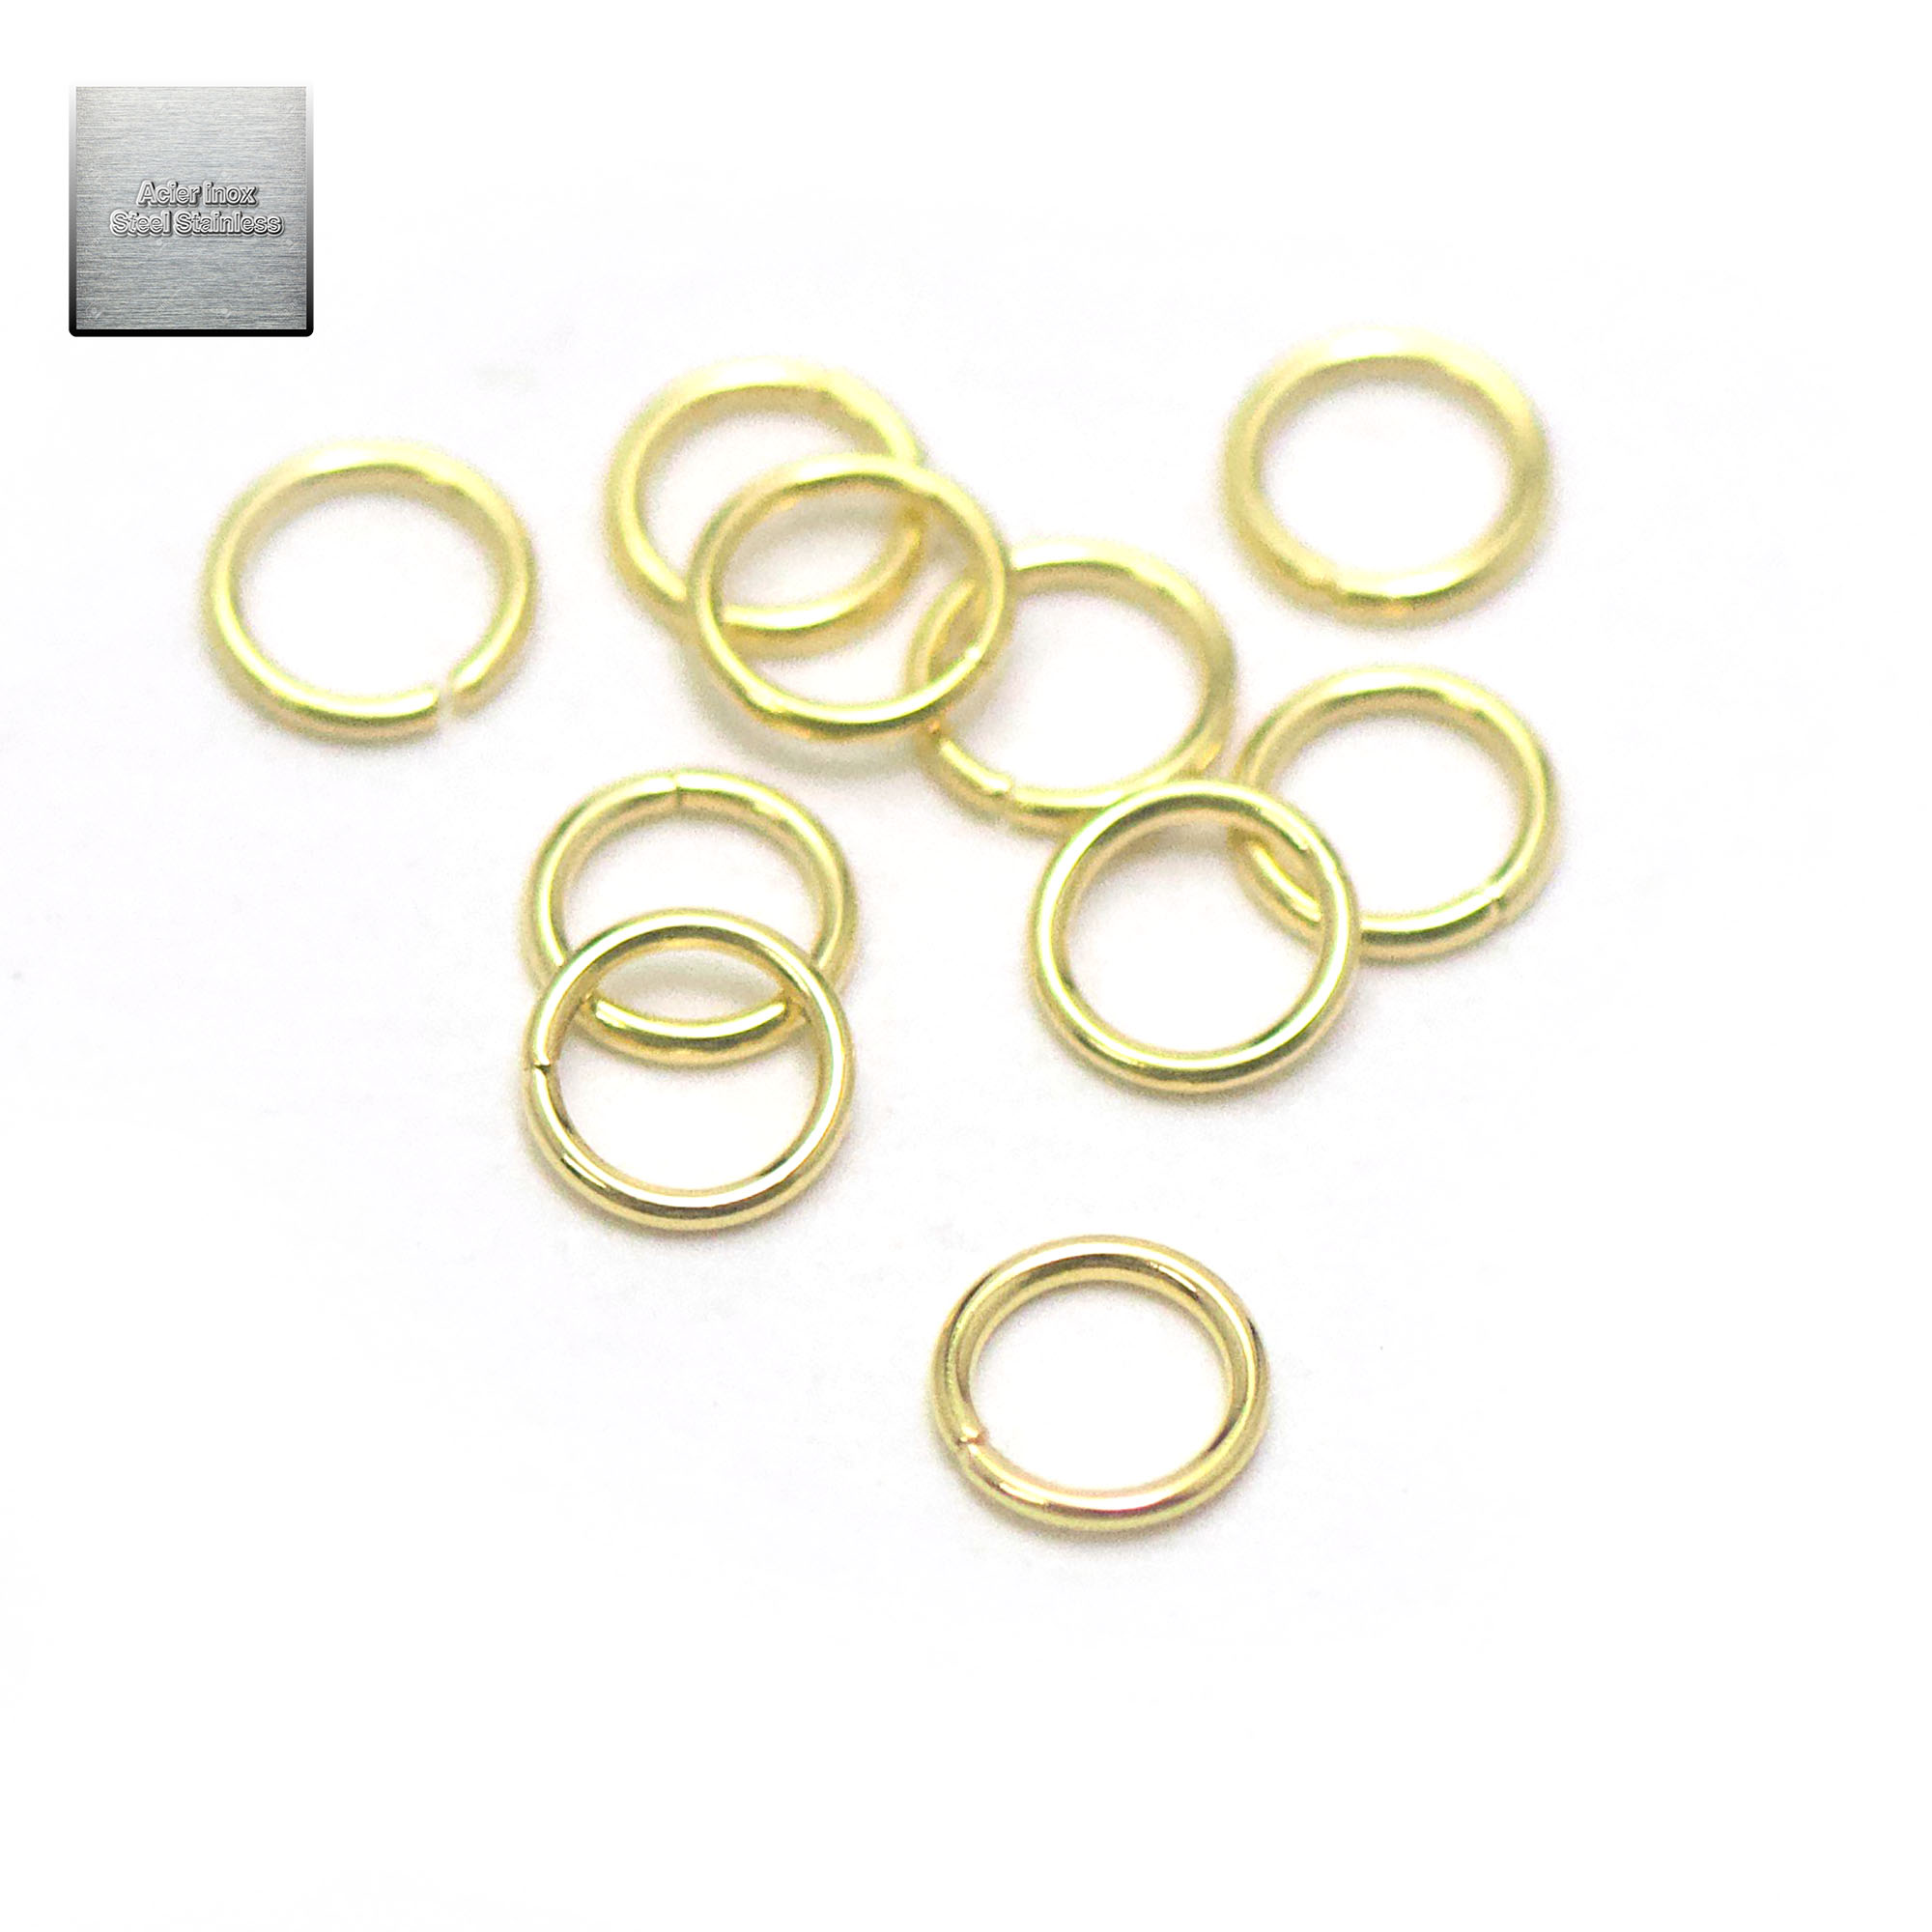 50 anneaux brisés en acier inox doré 5x0,7 mm, steel stainless